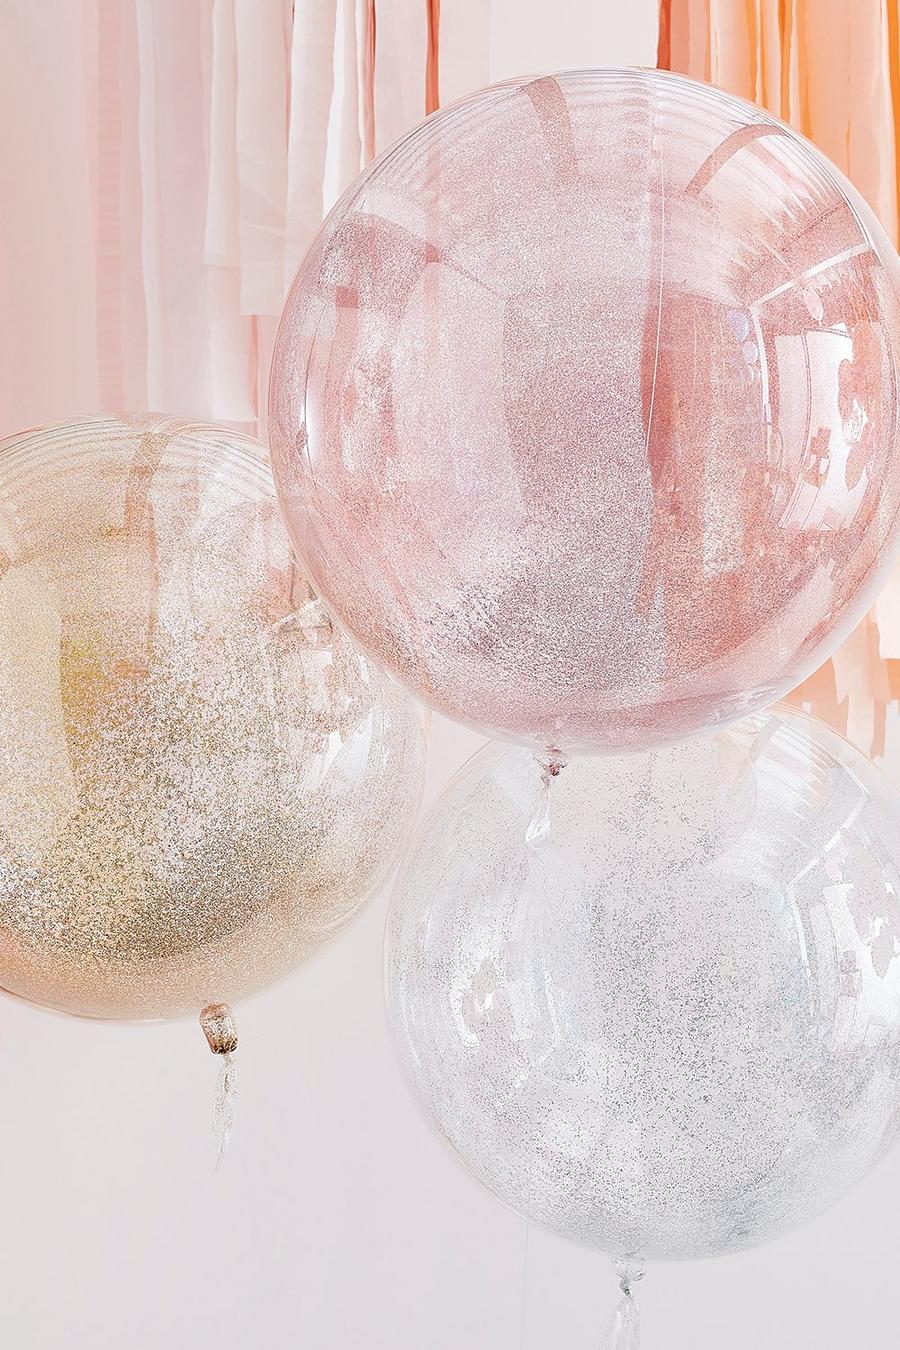 Ginger Ray - palloncini in colori metallizzati misti con glitter, Pink image number 1